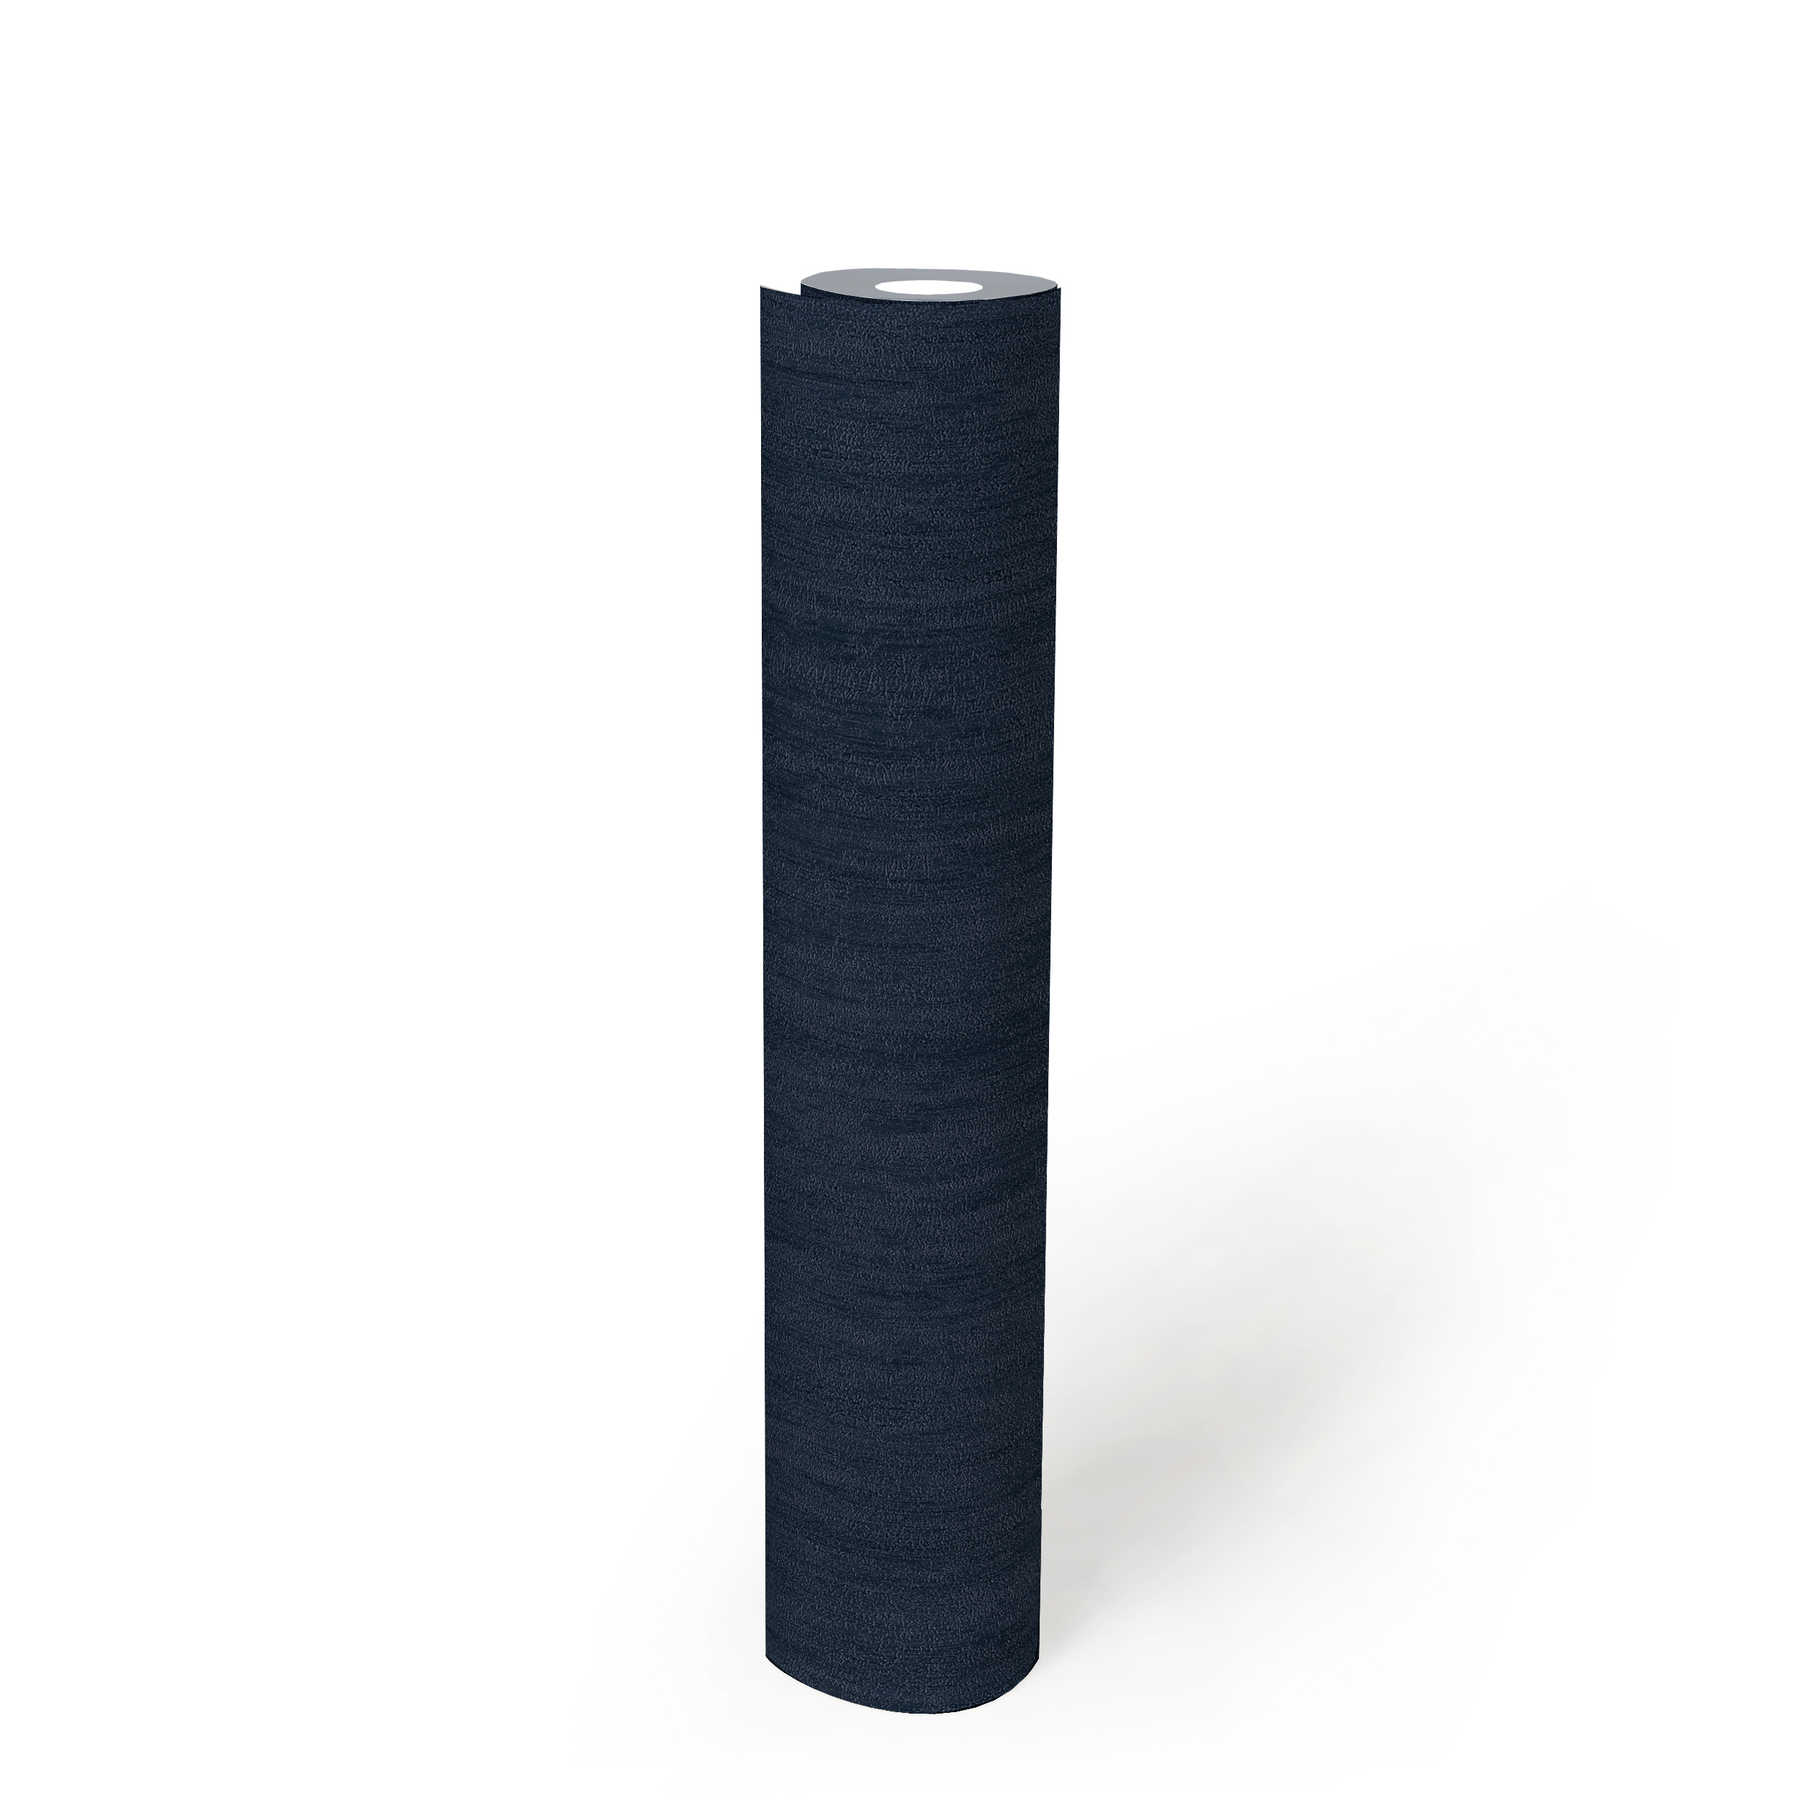             Behang donkerblauw met glans effect & natuurlijke structuur ontwerp
        